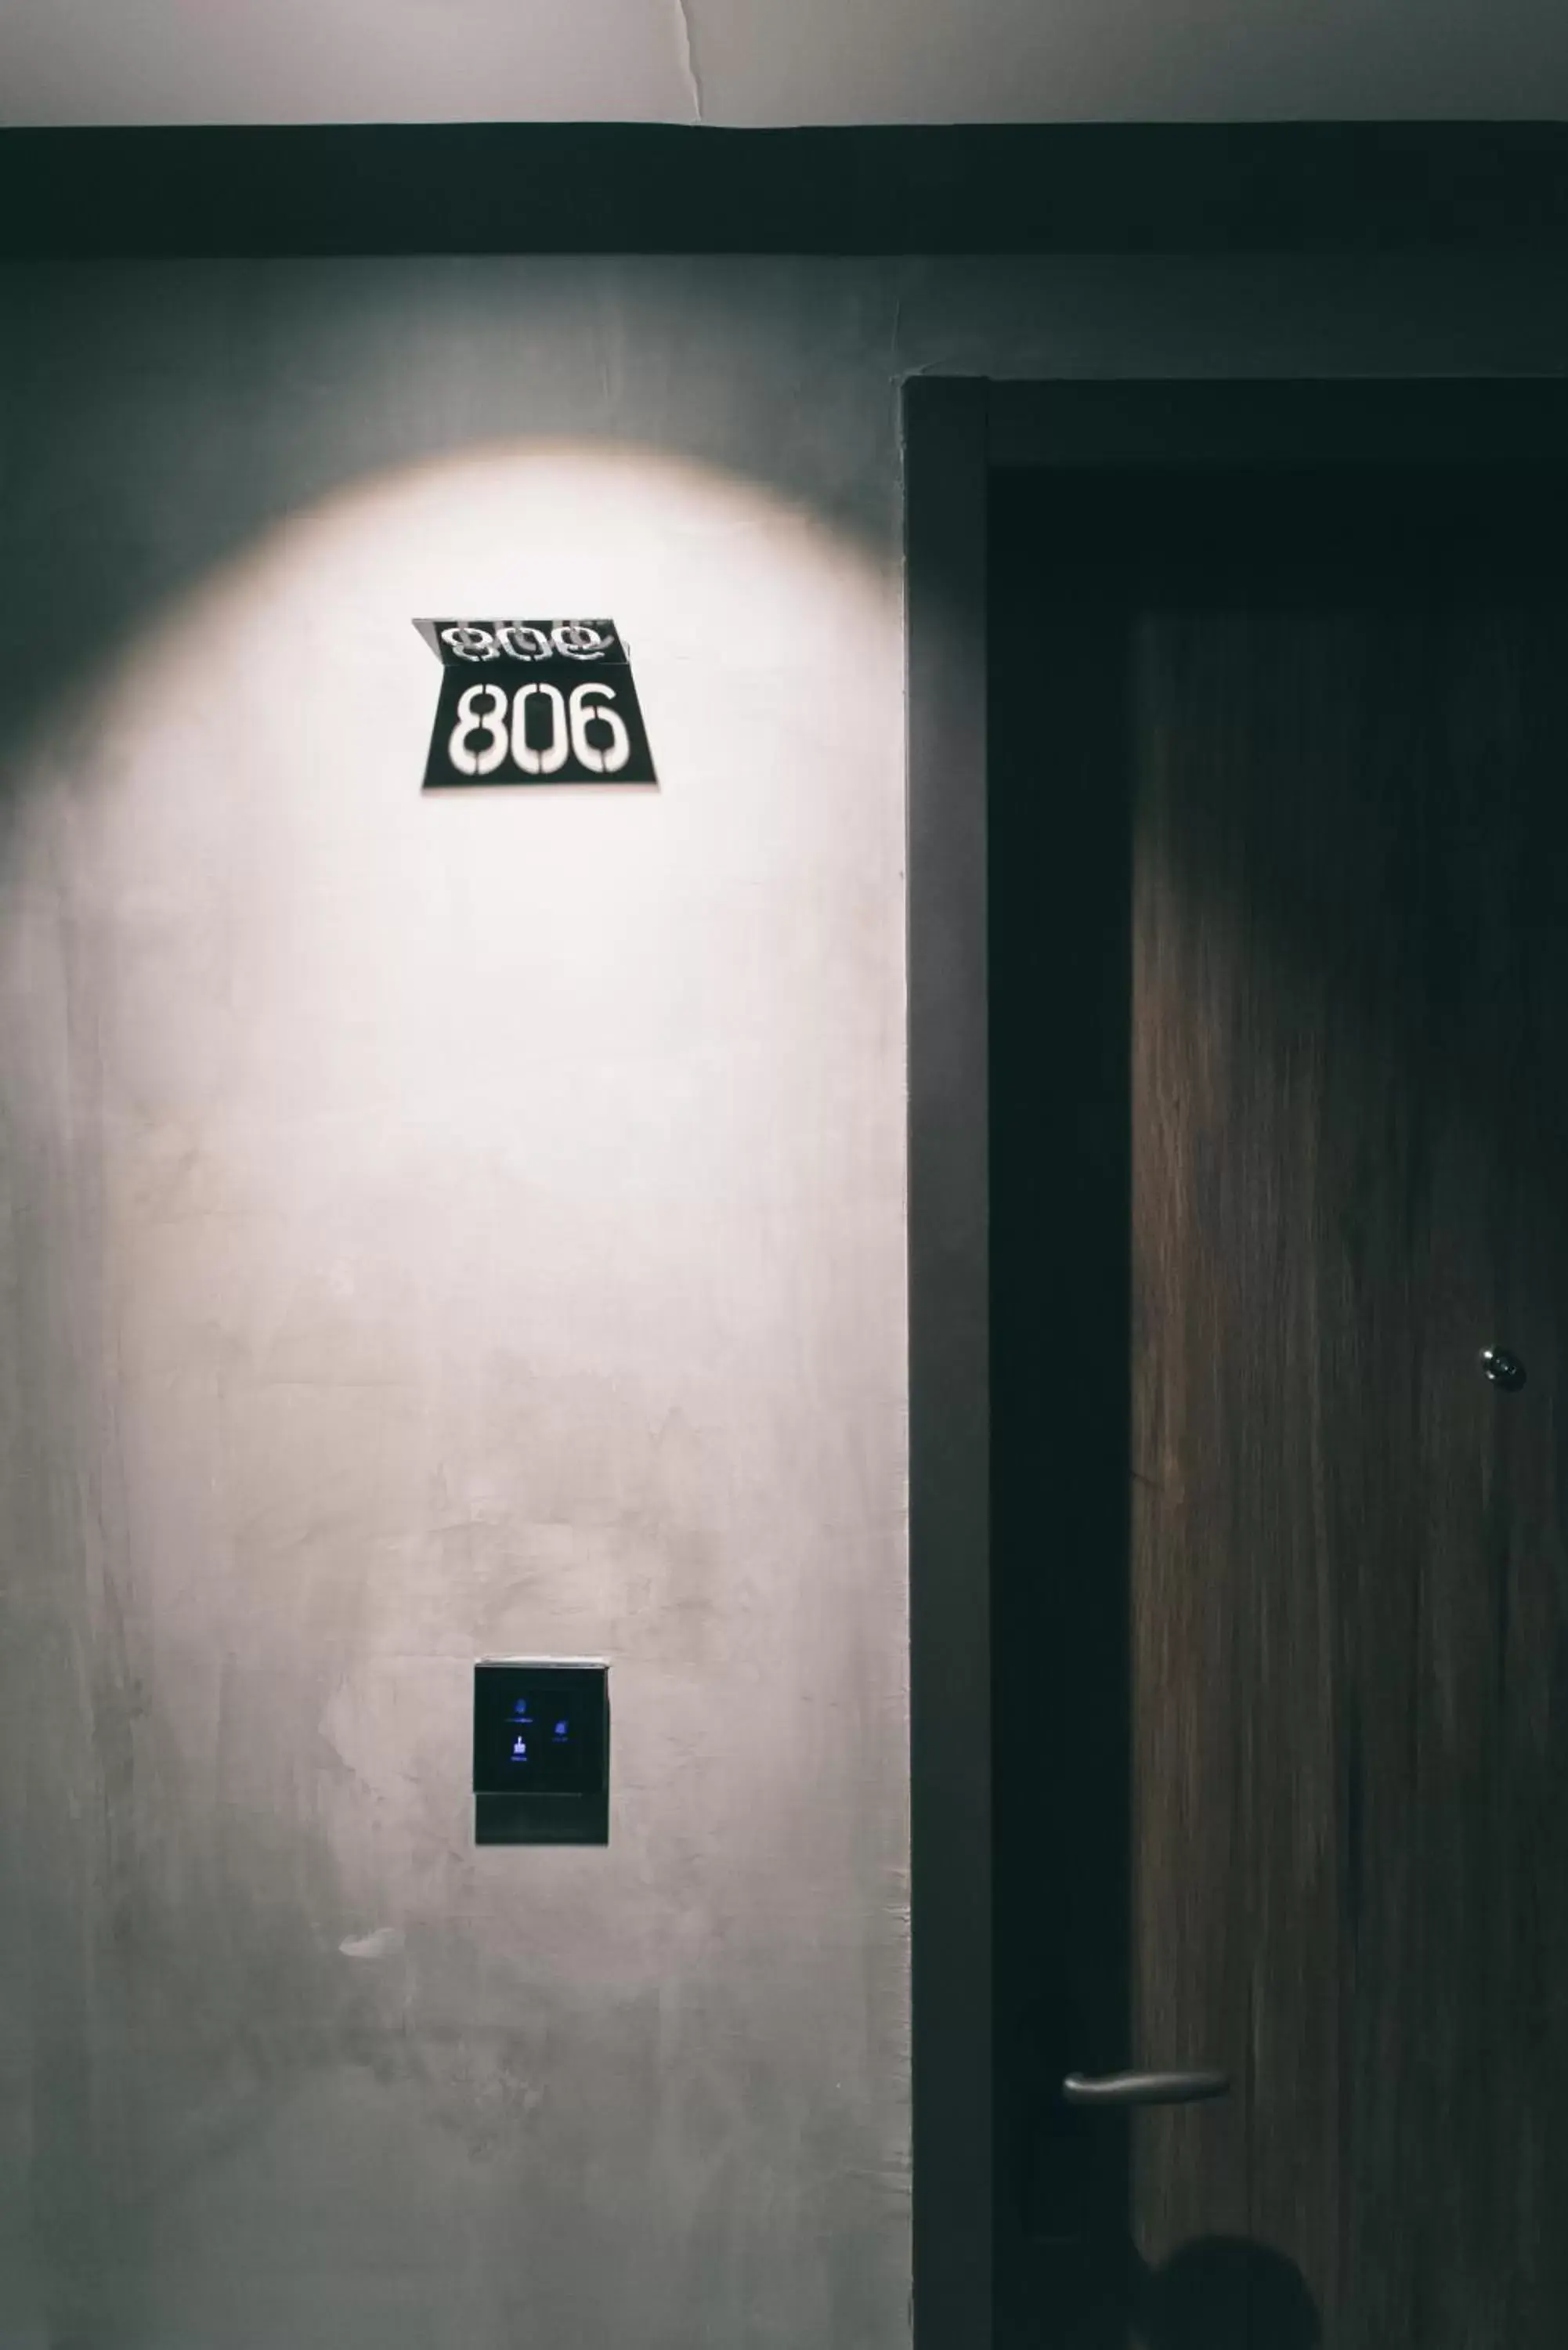 Facade/entrance in PAPO’A HOTEL